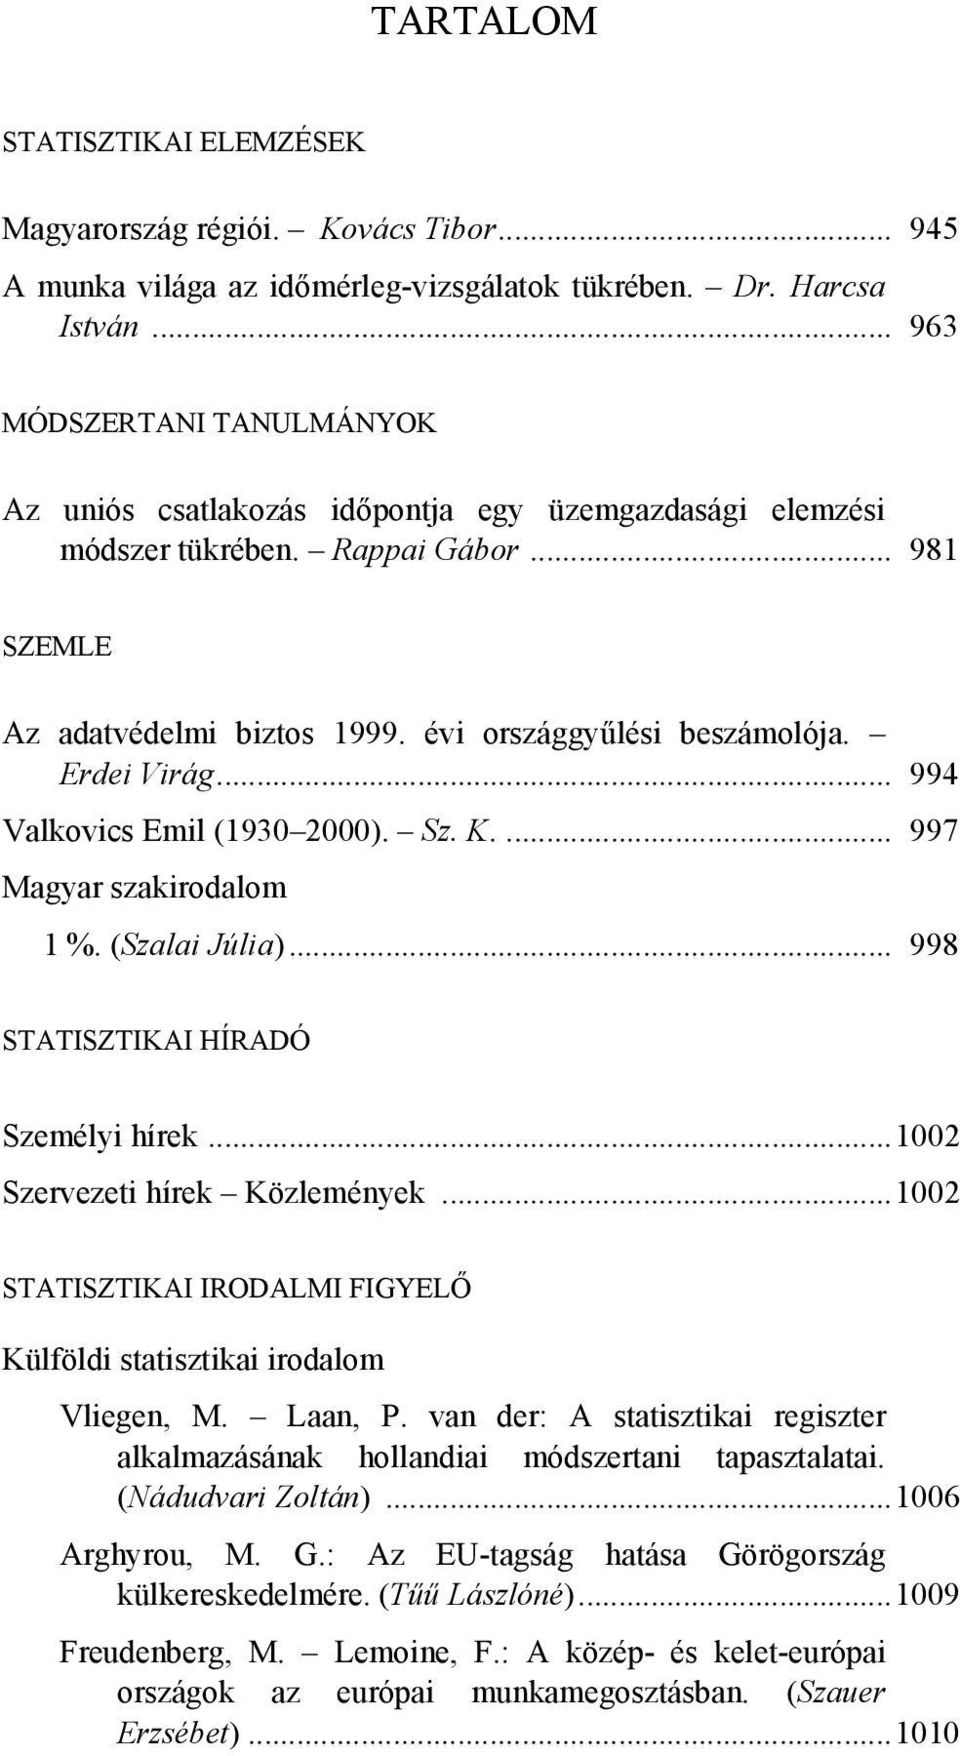 Erdei Virág... 994 Valkovics Emil (1930 2000). Sz. K.... 997 Magyar szakirodalom 1 %. (Szalai Júlia)... 998 STATISZTIKAI HÍRADÓ Személyi hírek...1002 Szervezeti hírek Közlemények.